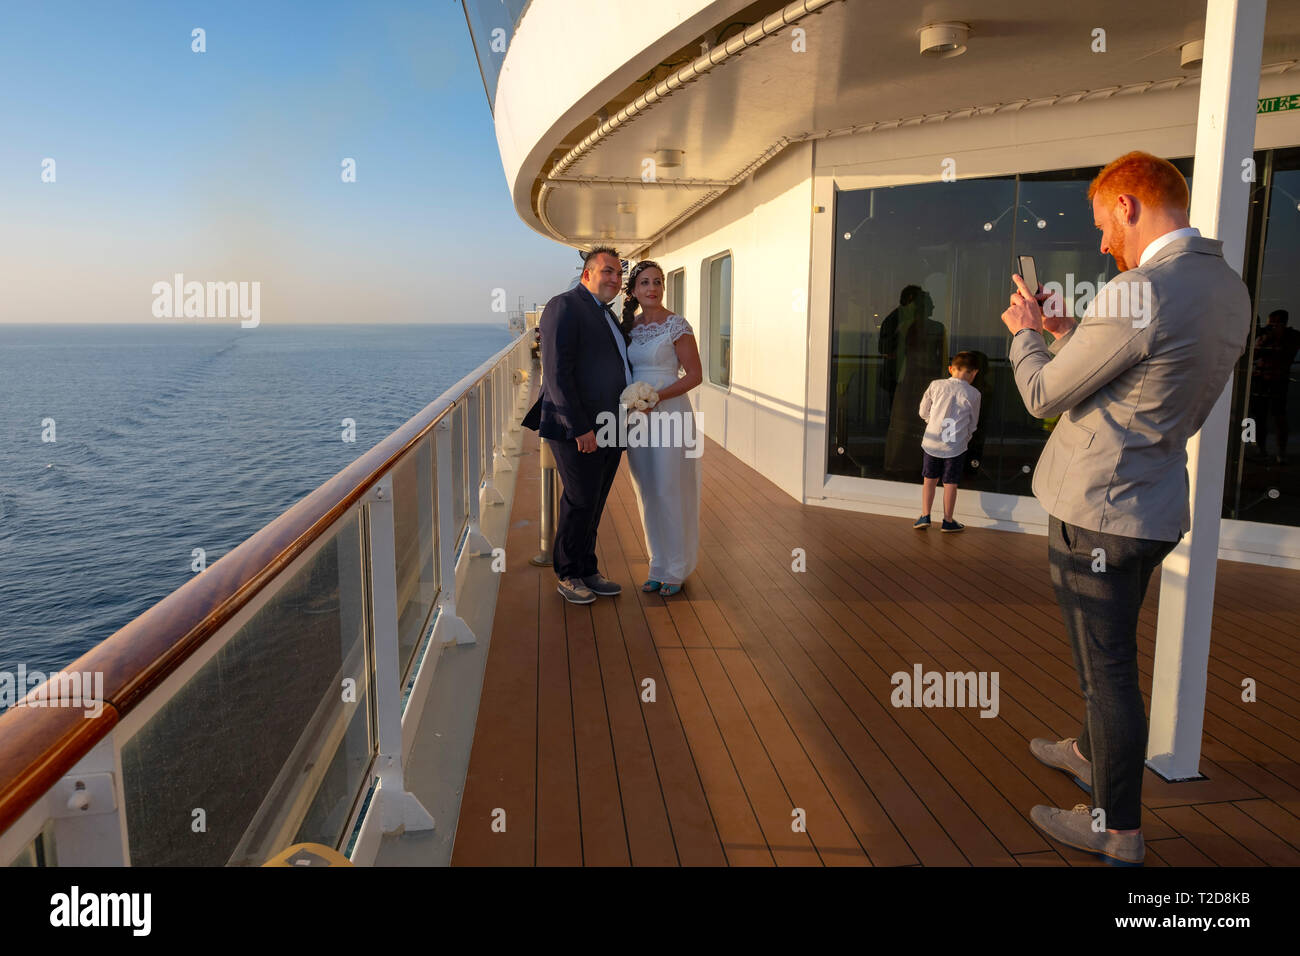 L'homme à prendre des photos de la mariée et le marié avec son smartphone pendant que sur le pont d'un navire de croisière Banque D'Images